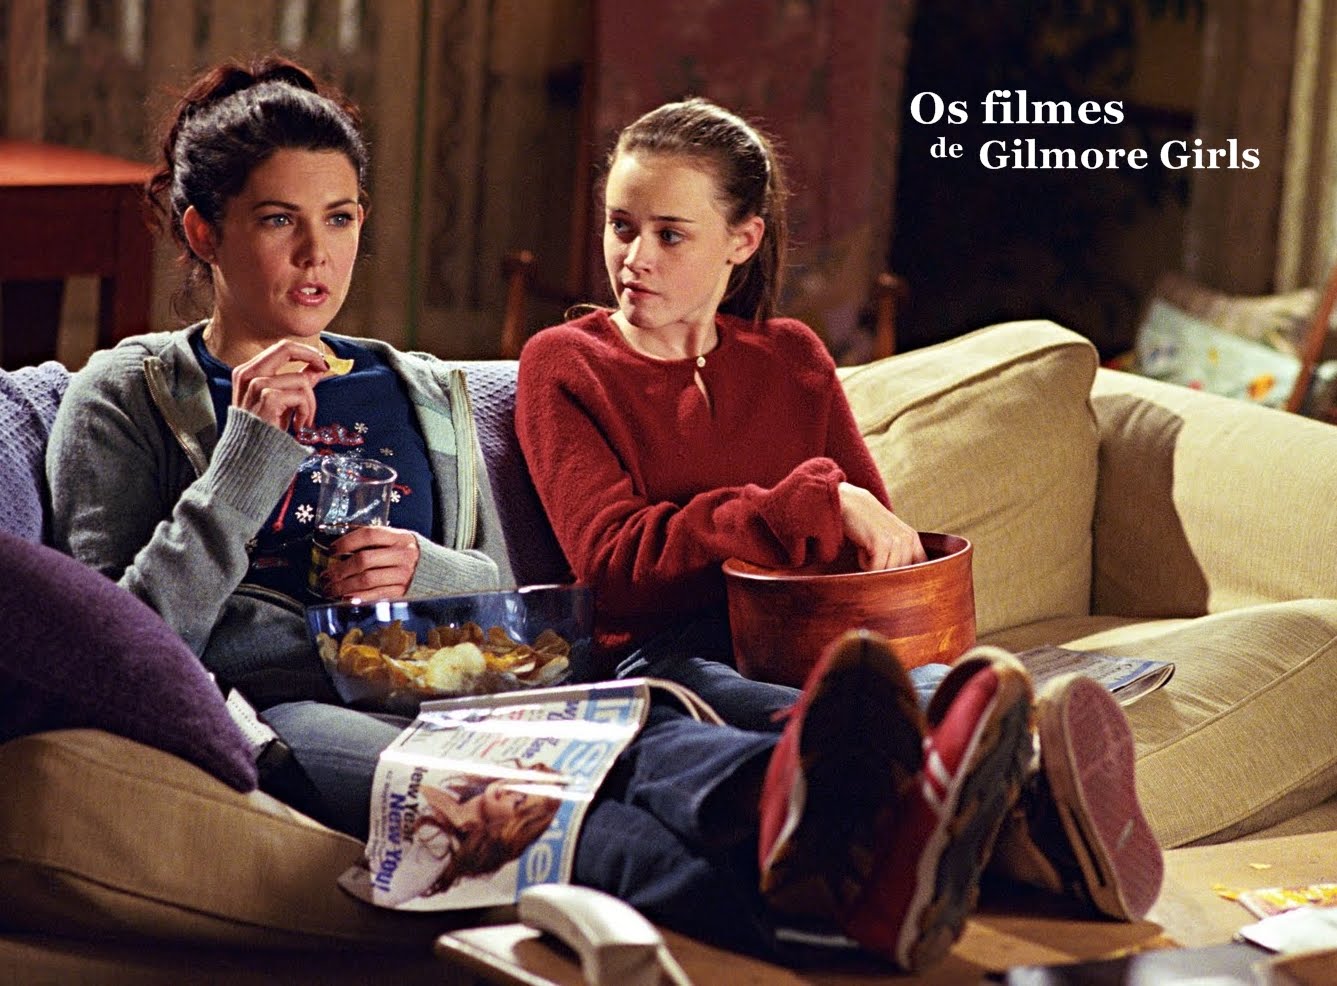 Os filmes de Gilmore Girls